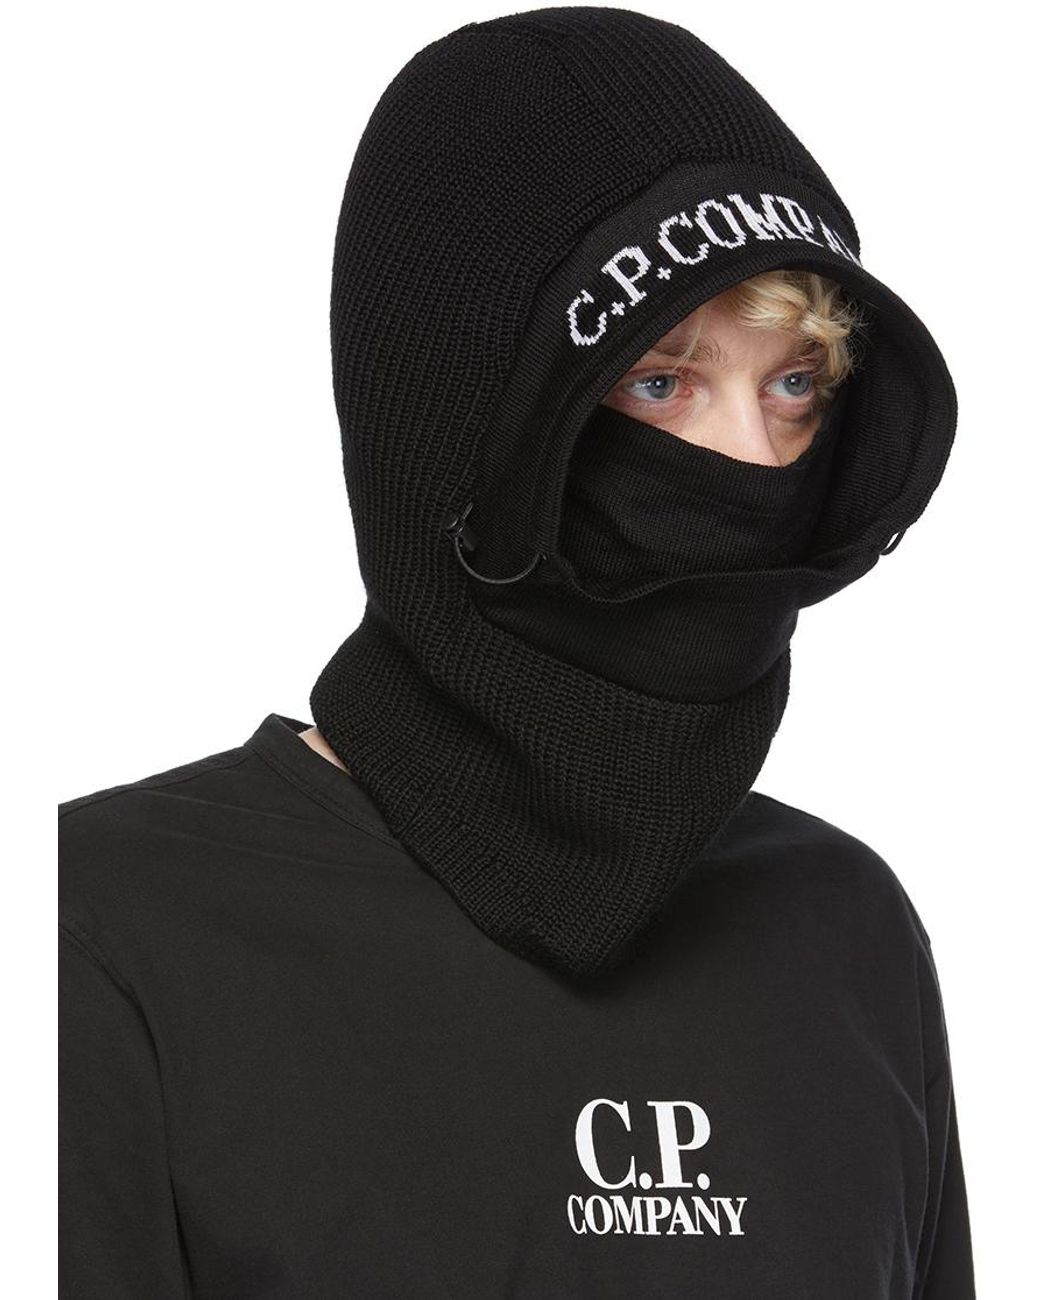 CP Company Bonnet à lunettes extra fin en laine mérinos noir, Noir